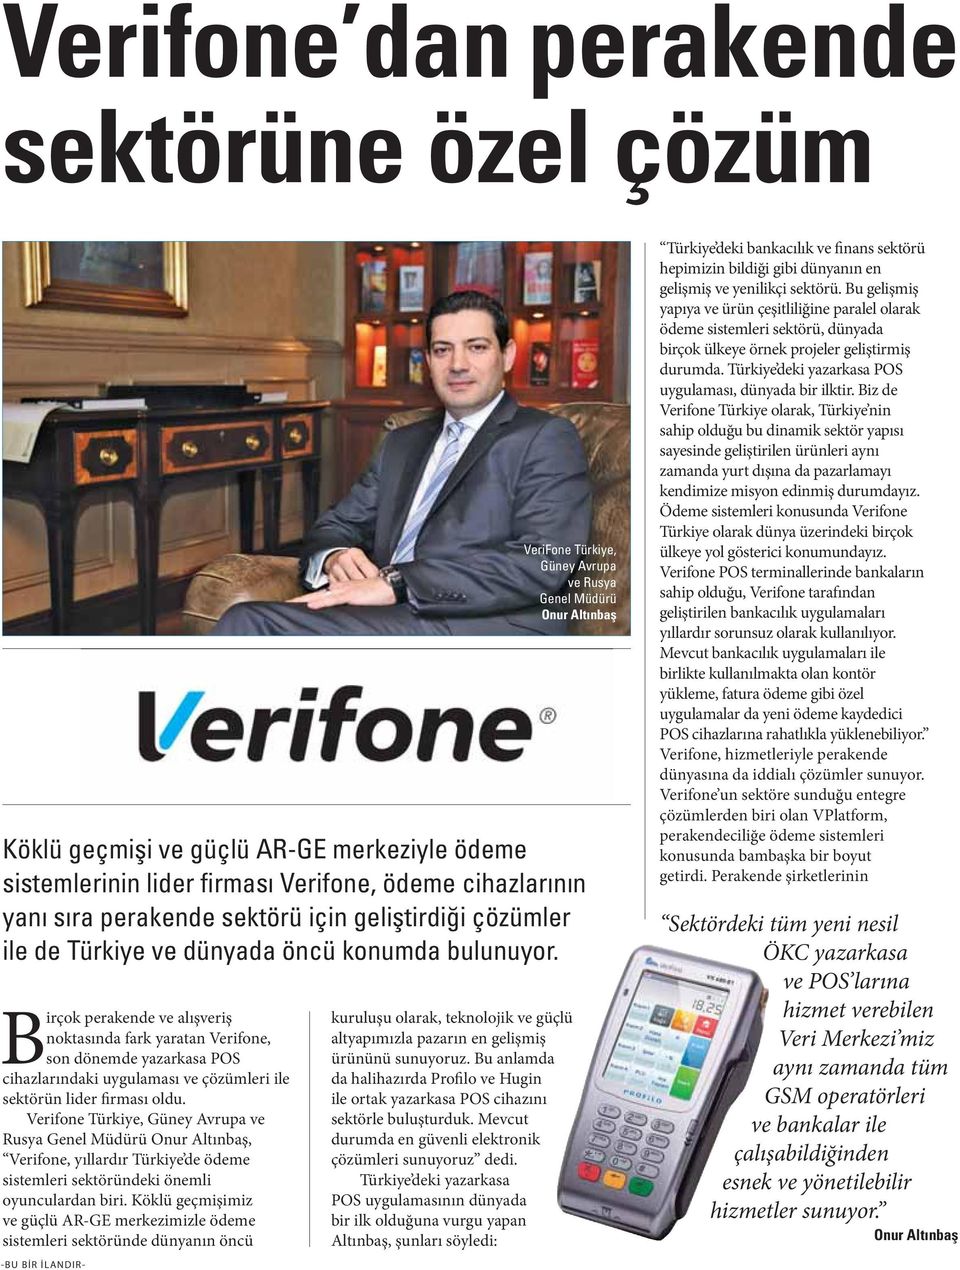 Köklü geçmişimiz ve güçlü AR-GE merkezimizle ödeme sistemleri sektöründe dünyanın öncü VeriFone Türkiye, Güney Avrupa ve Rusya Genel Müdürü -BU BİR İLANDIR- kuruluşu olarak, teknolojik ve güçlü